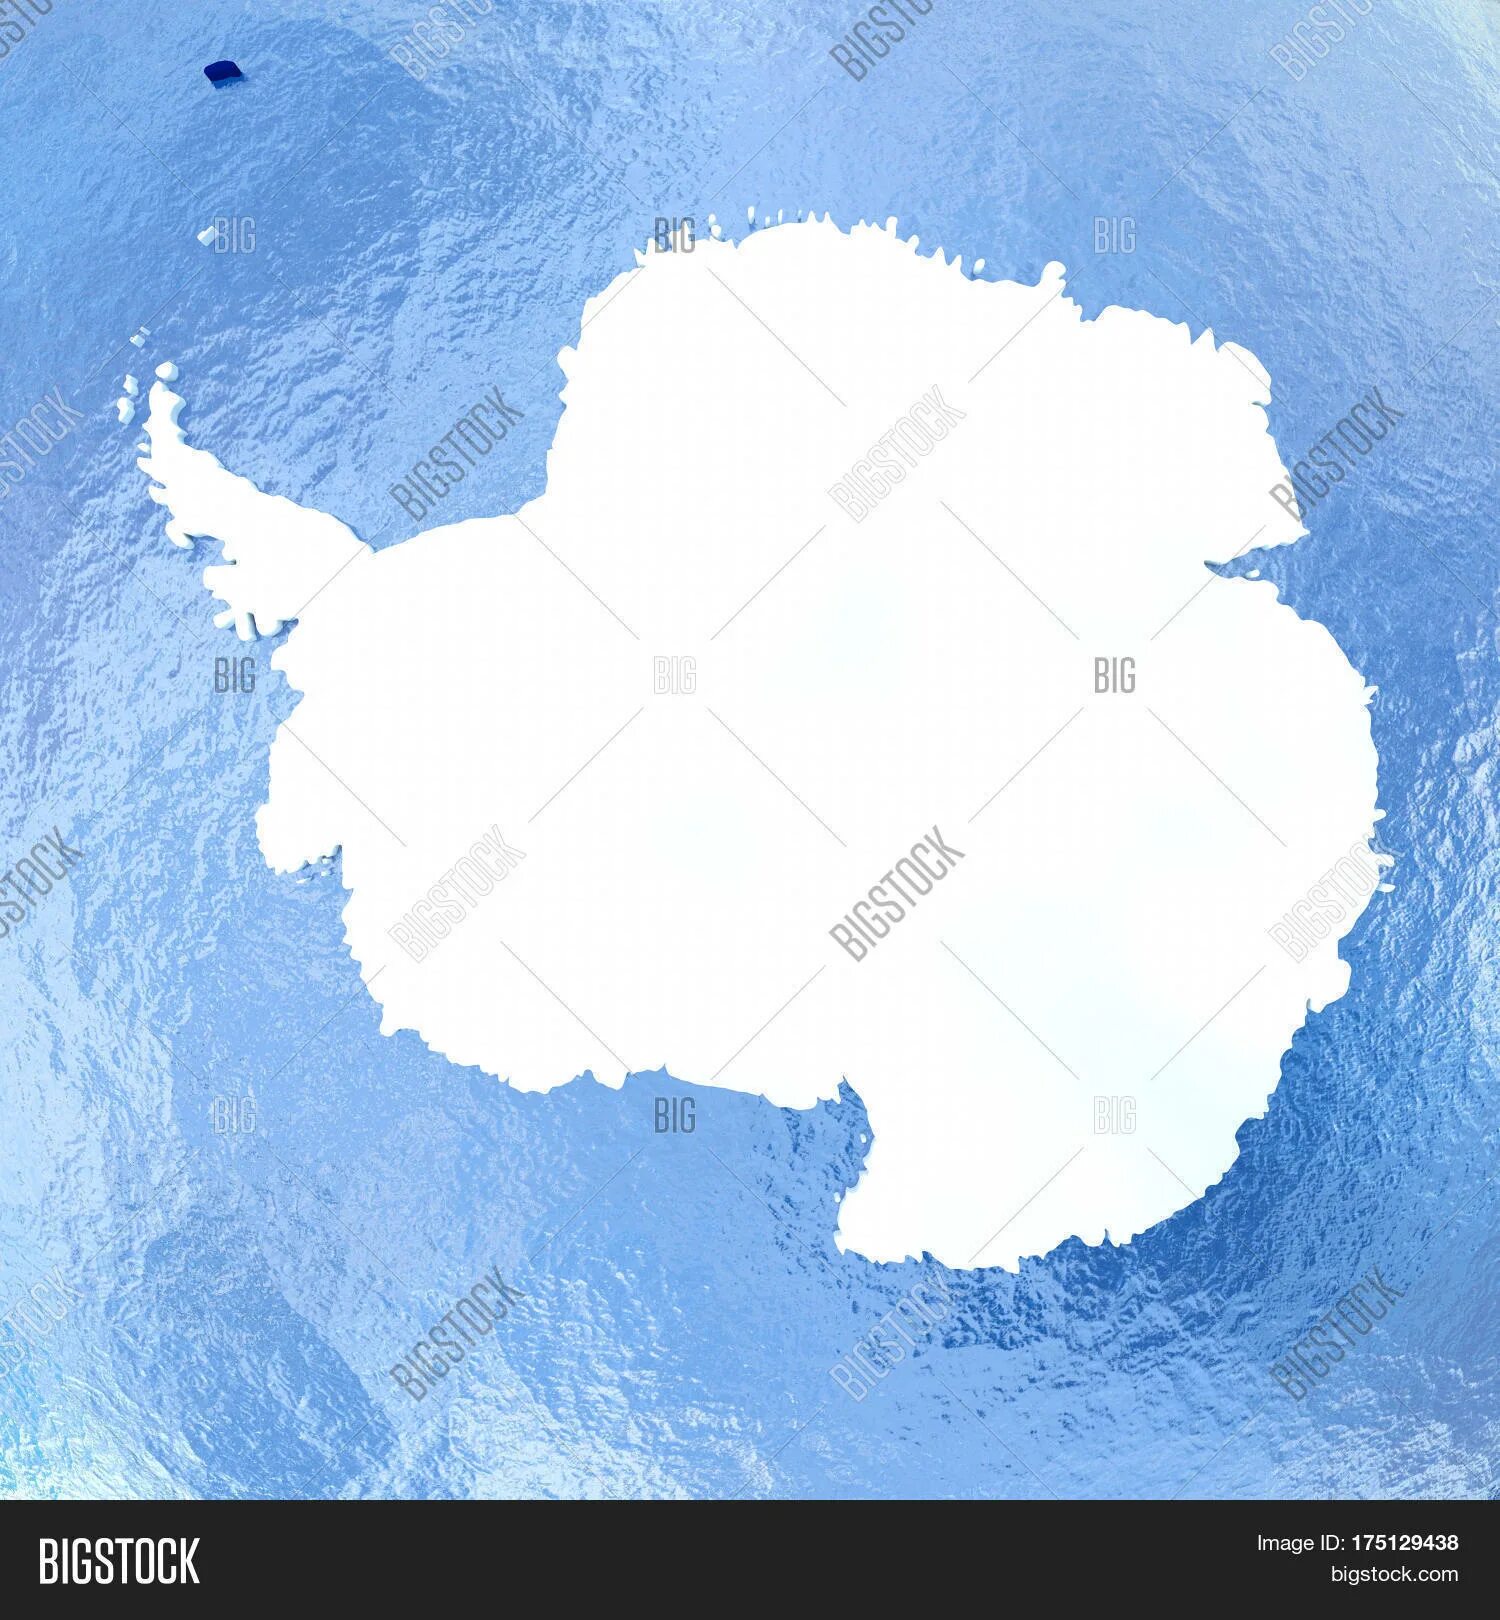 Антарктида материк на глобусе. Антарктида на карте. Антарктида на белом фоне. Континент Антарктида глобусе. Океаны антарктиды на контурной